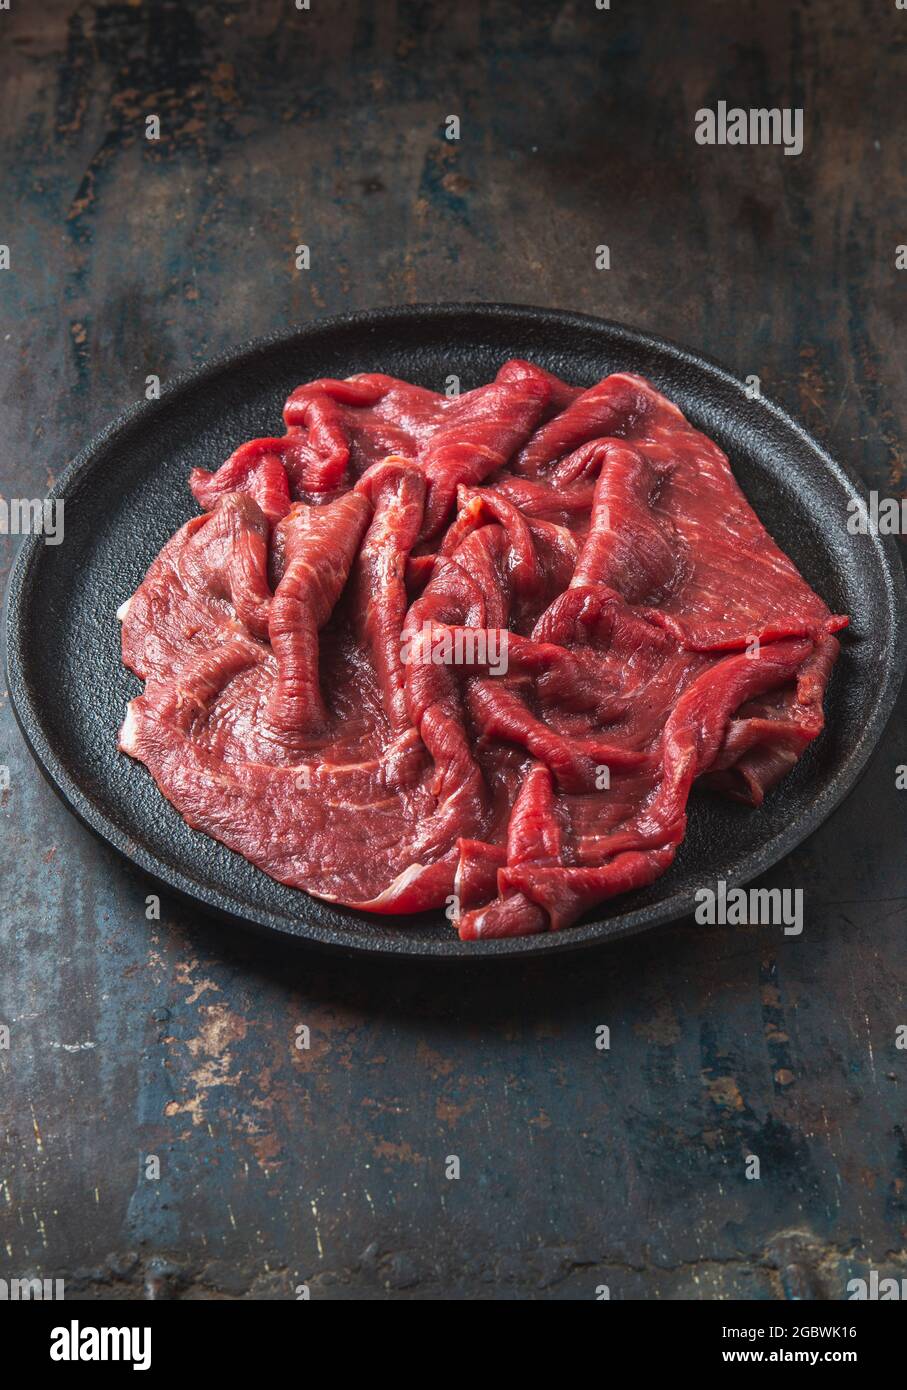 Filet de bœuf aux herbes et aux épices sur une assiette en fonte Banque D'Images